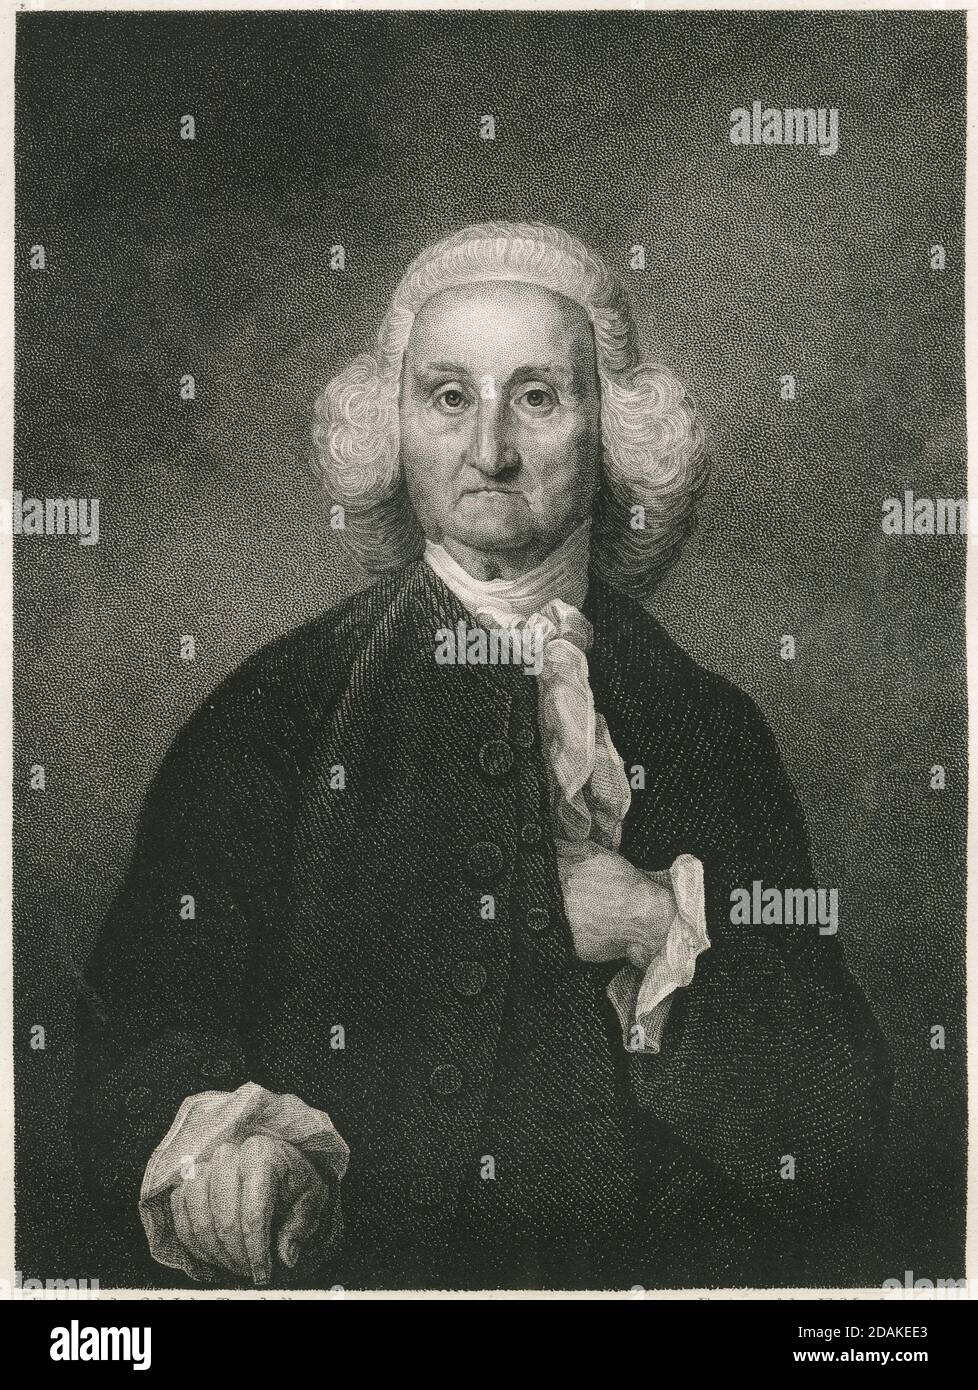 Gravure antique c1860, Jonathan Trumbull. Jonathan Trumbull Sr. (1710-1785) était un homme politique et un homme d'État américain qui a servi comme gouverneur du Connecticut pendant la Révolution américaine. SOURCE : GRAVURE ORIGINALE Banque D'Images